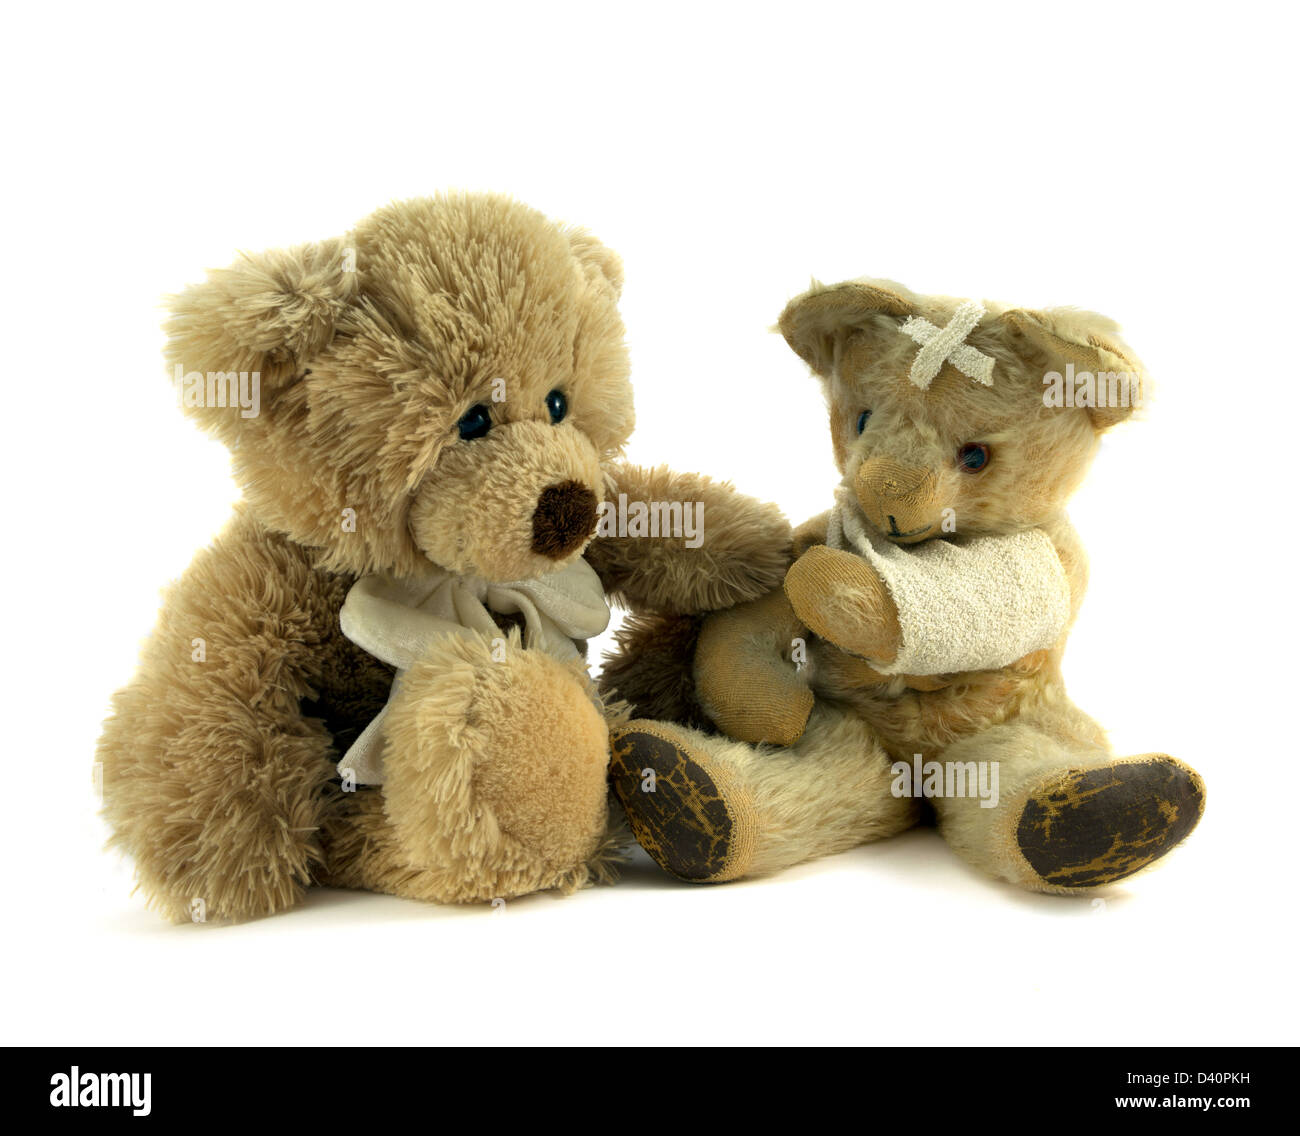 Teddy consolante feriti teddy con braccio in una imbracatura e gesso sulla testa. Foto Stock